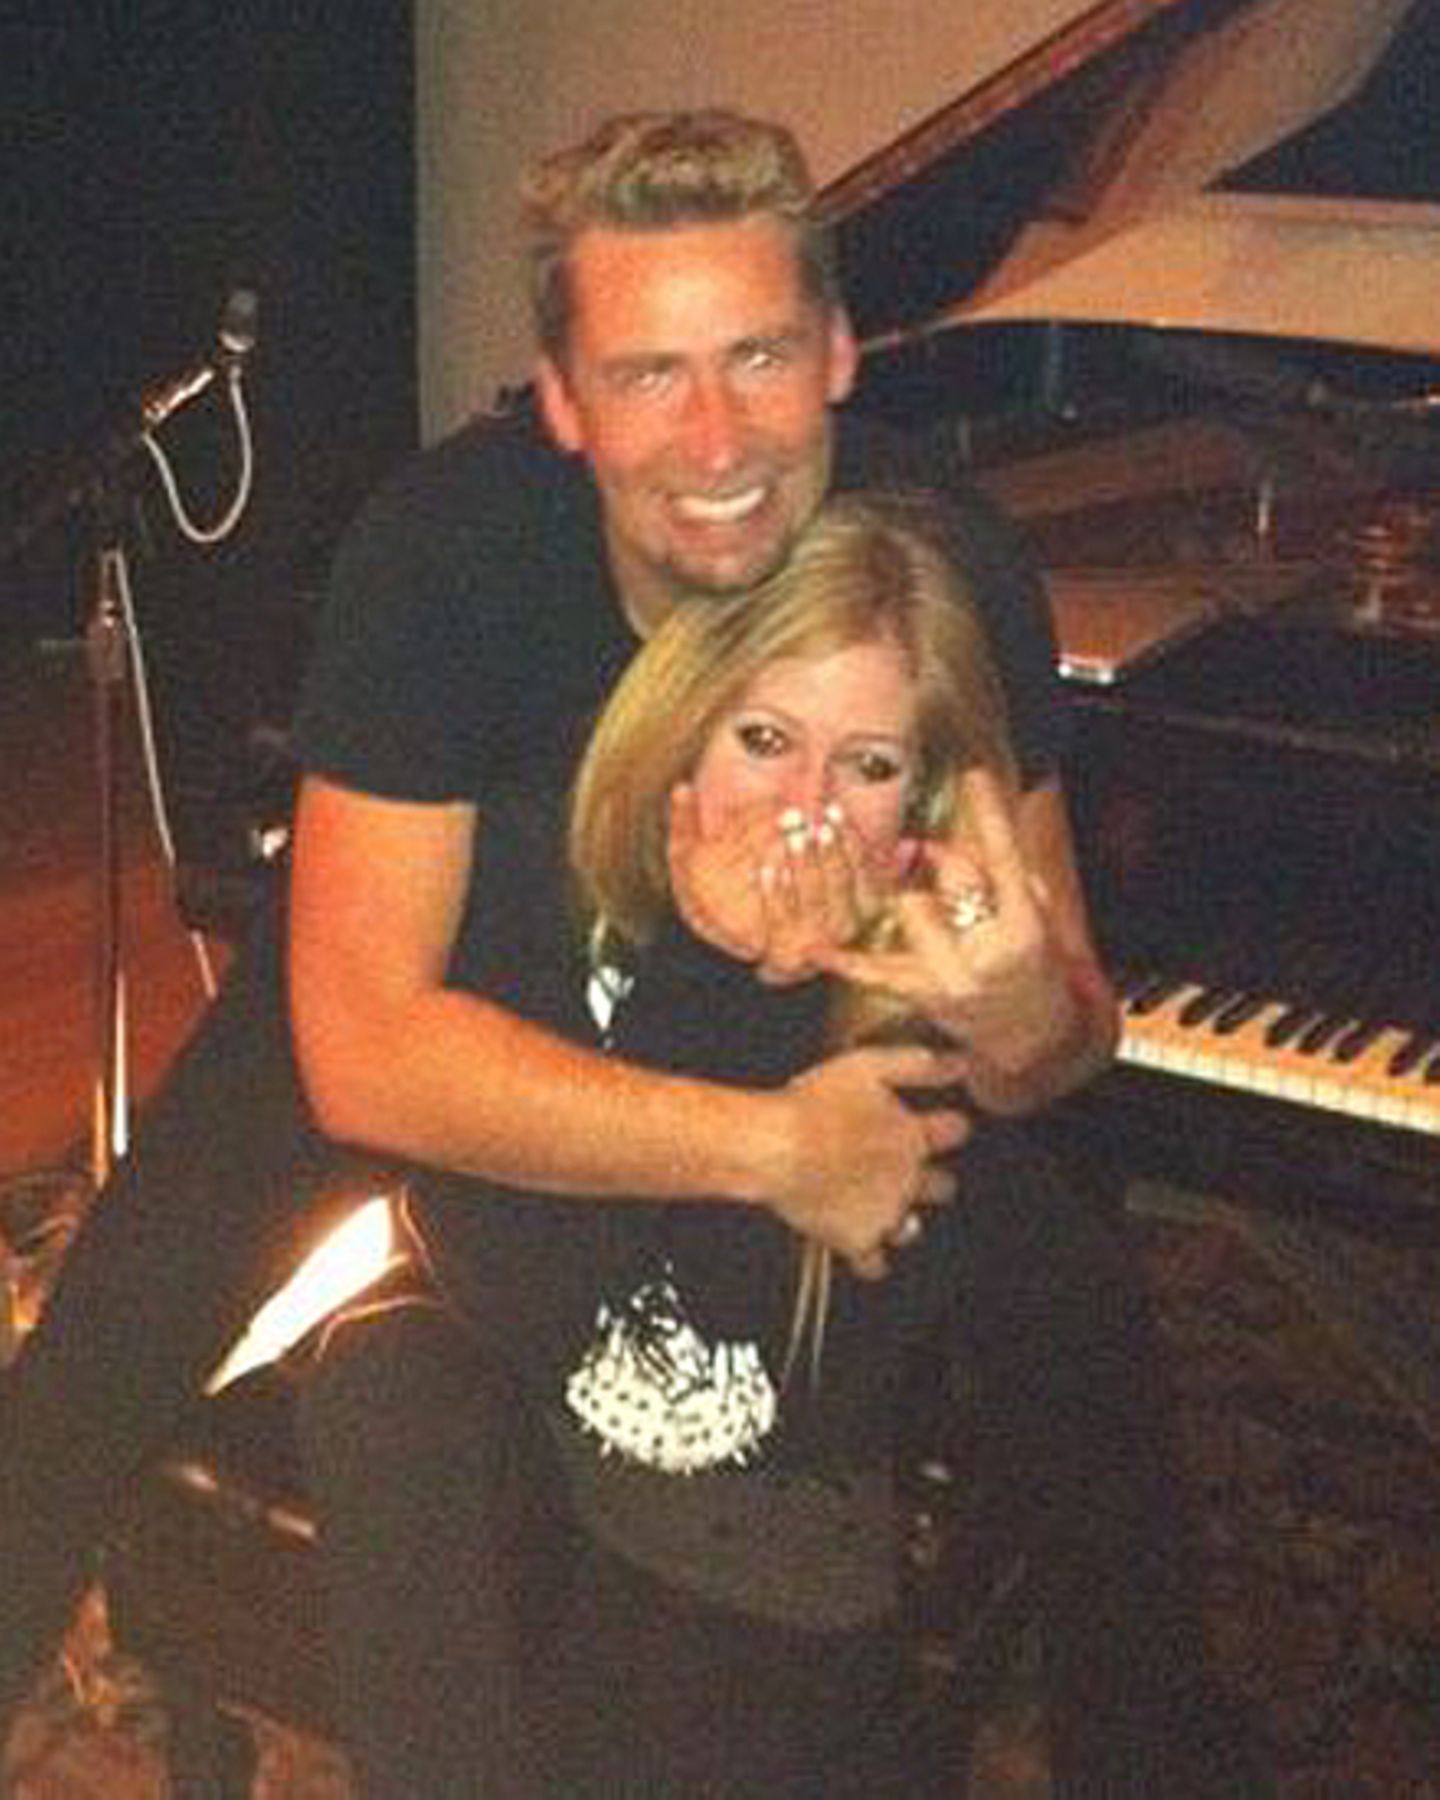 Am 29. Februar twitterte Avril Lavigne ein Foto von sich und Chad Kroeger. Zu diesem Zeitpunkt waren die beiden frisch verliebt.